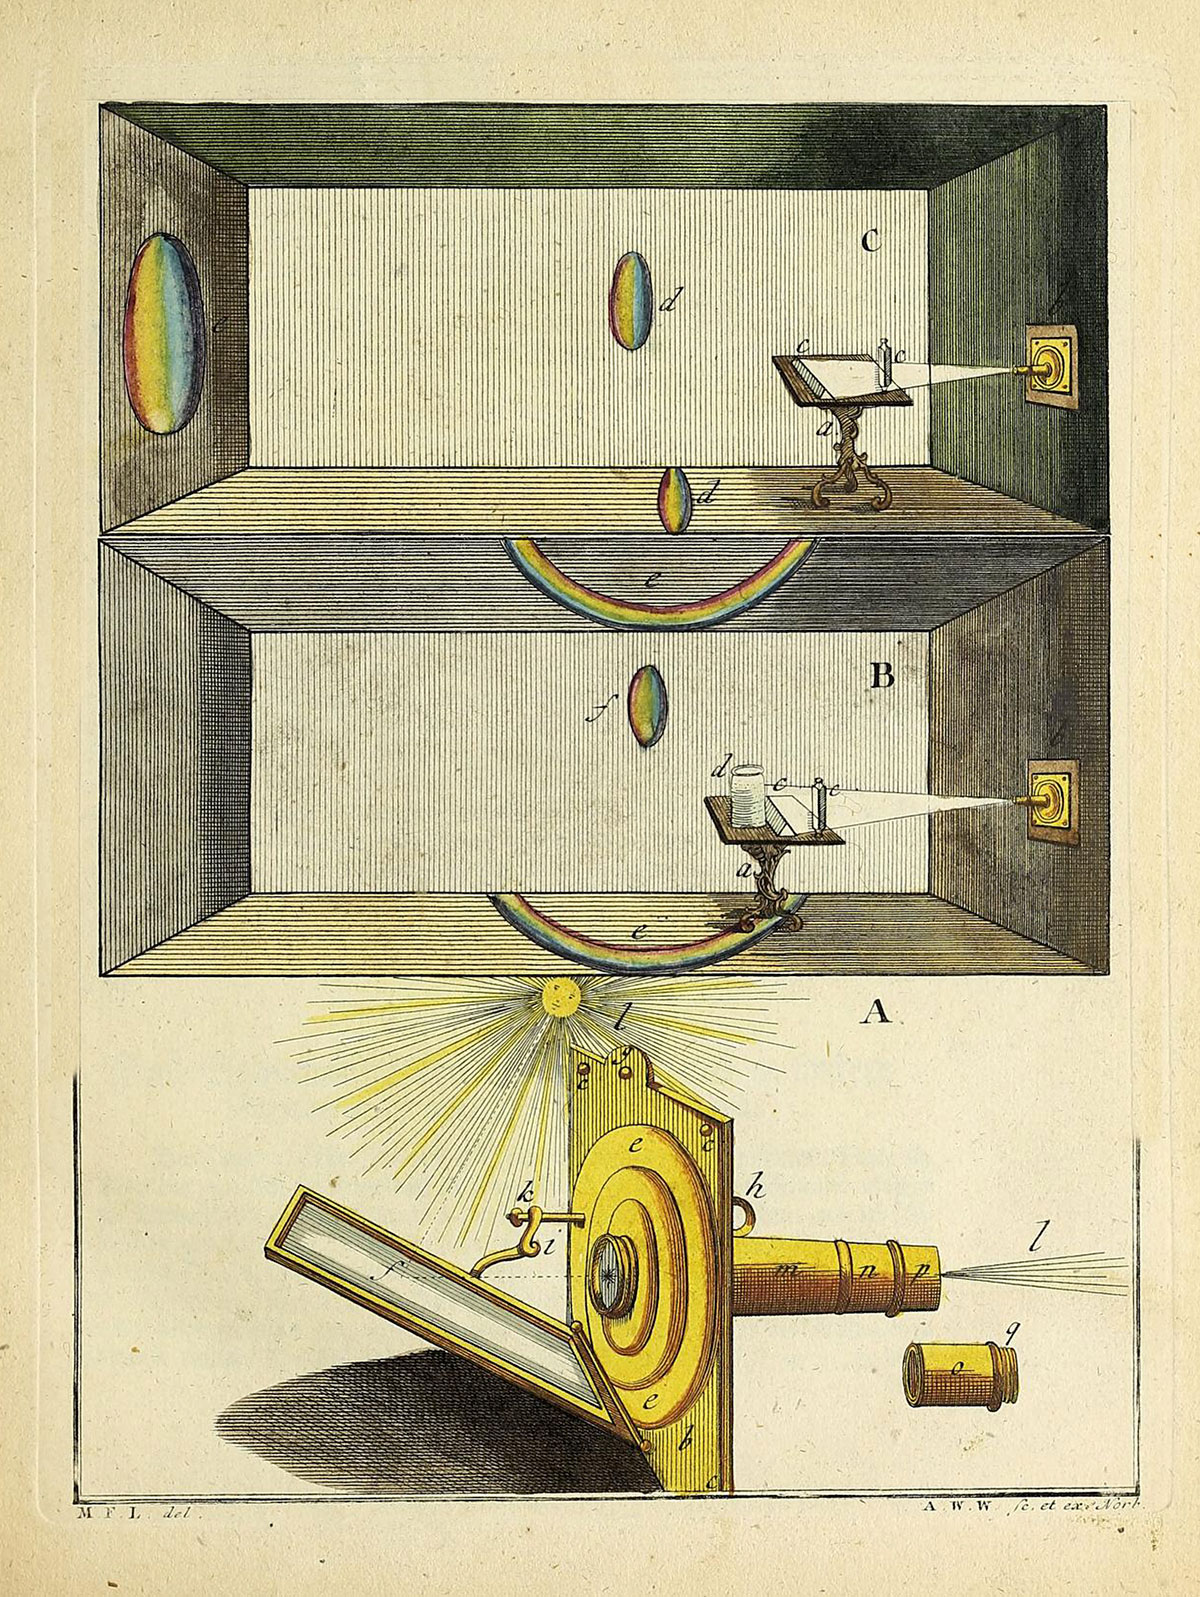 Spectrum formed by white light through a prism. From Martin Frobenius Ledermuller’s Drittes Funfzig seiner Mikroskopischen Gemuths- und Augen-Ergotzungen, 1762, Vol. II, Plate II, Wellcome Collection, London